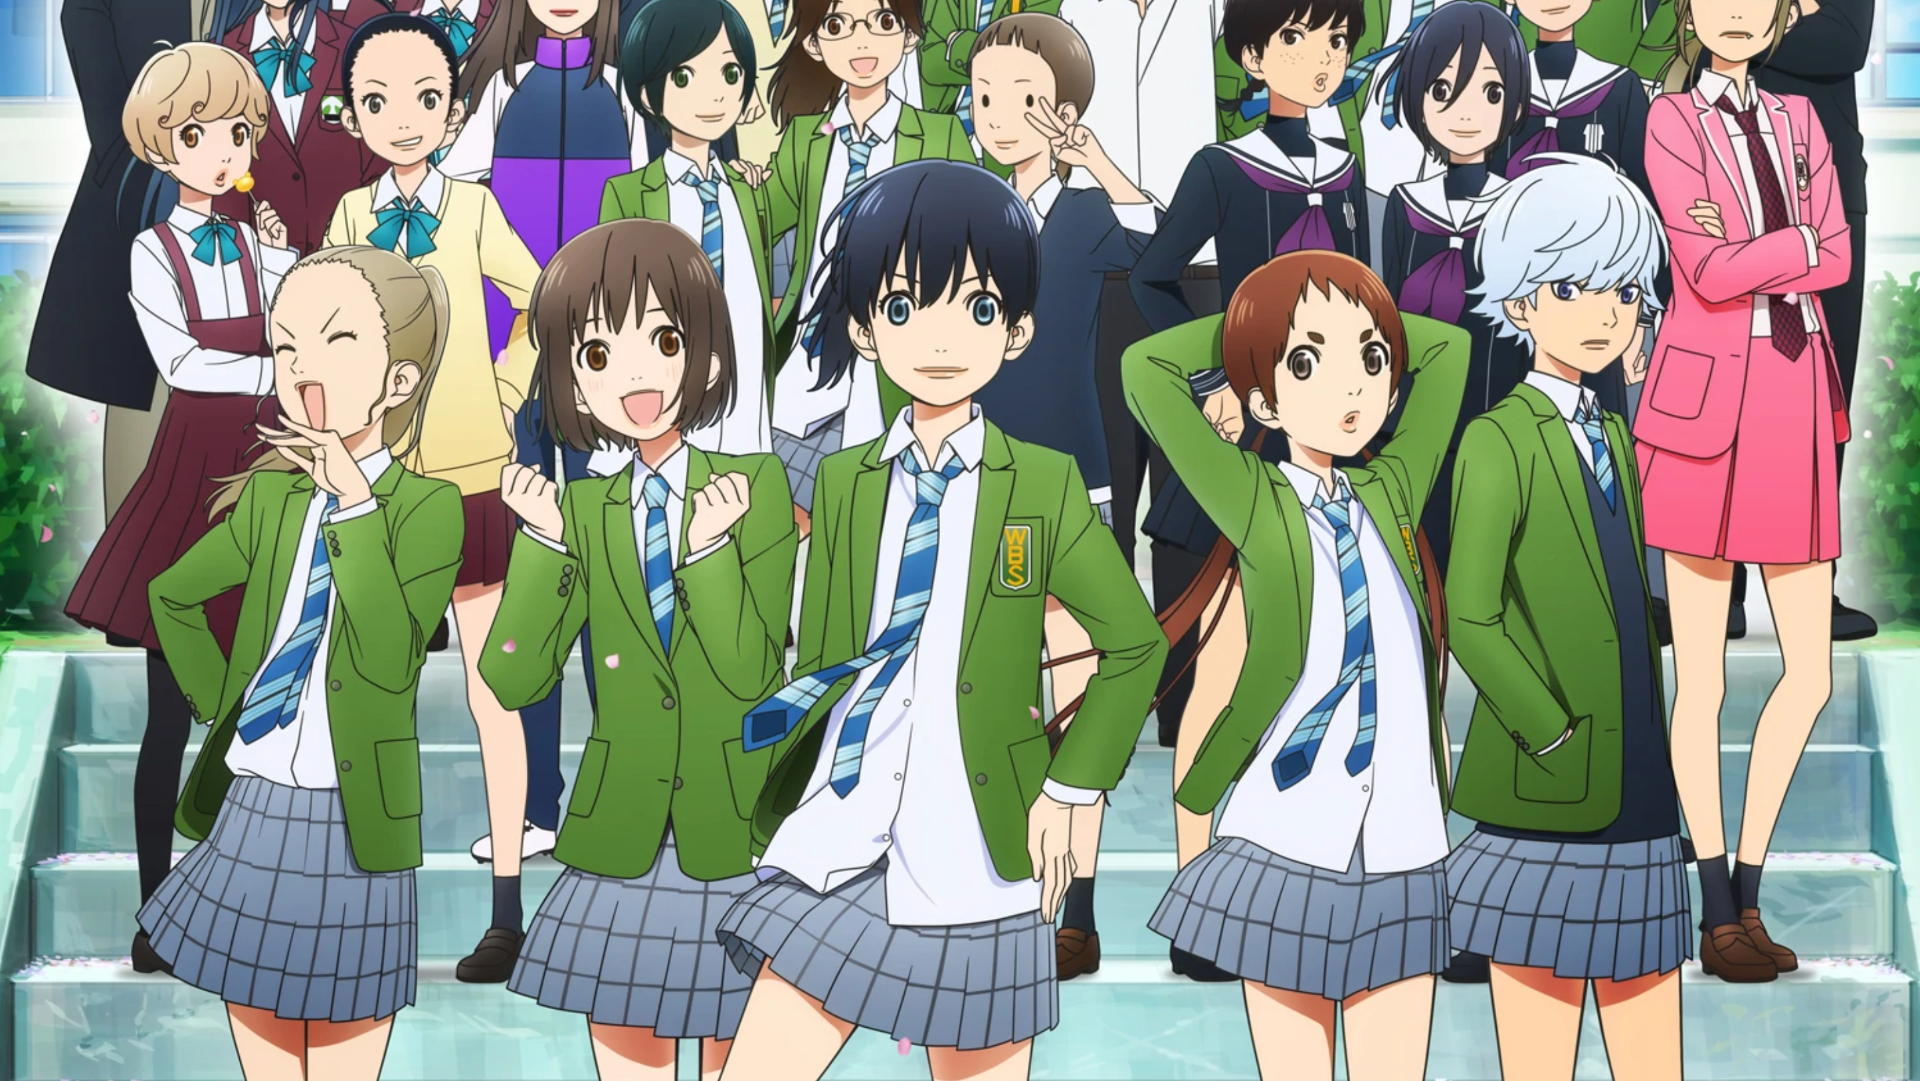 Nozomi Onda junto com seu elenco de apoio em uniformes escolares.